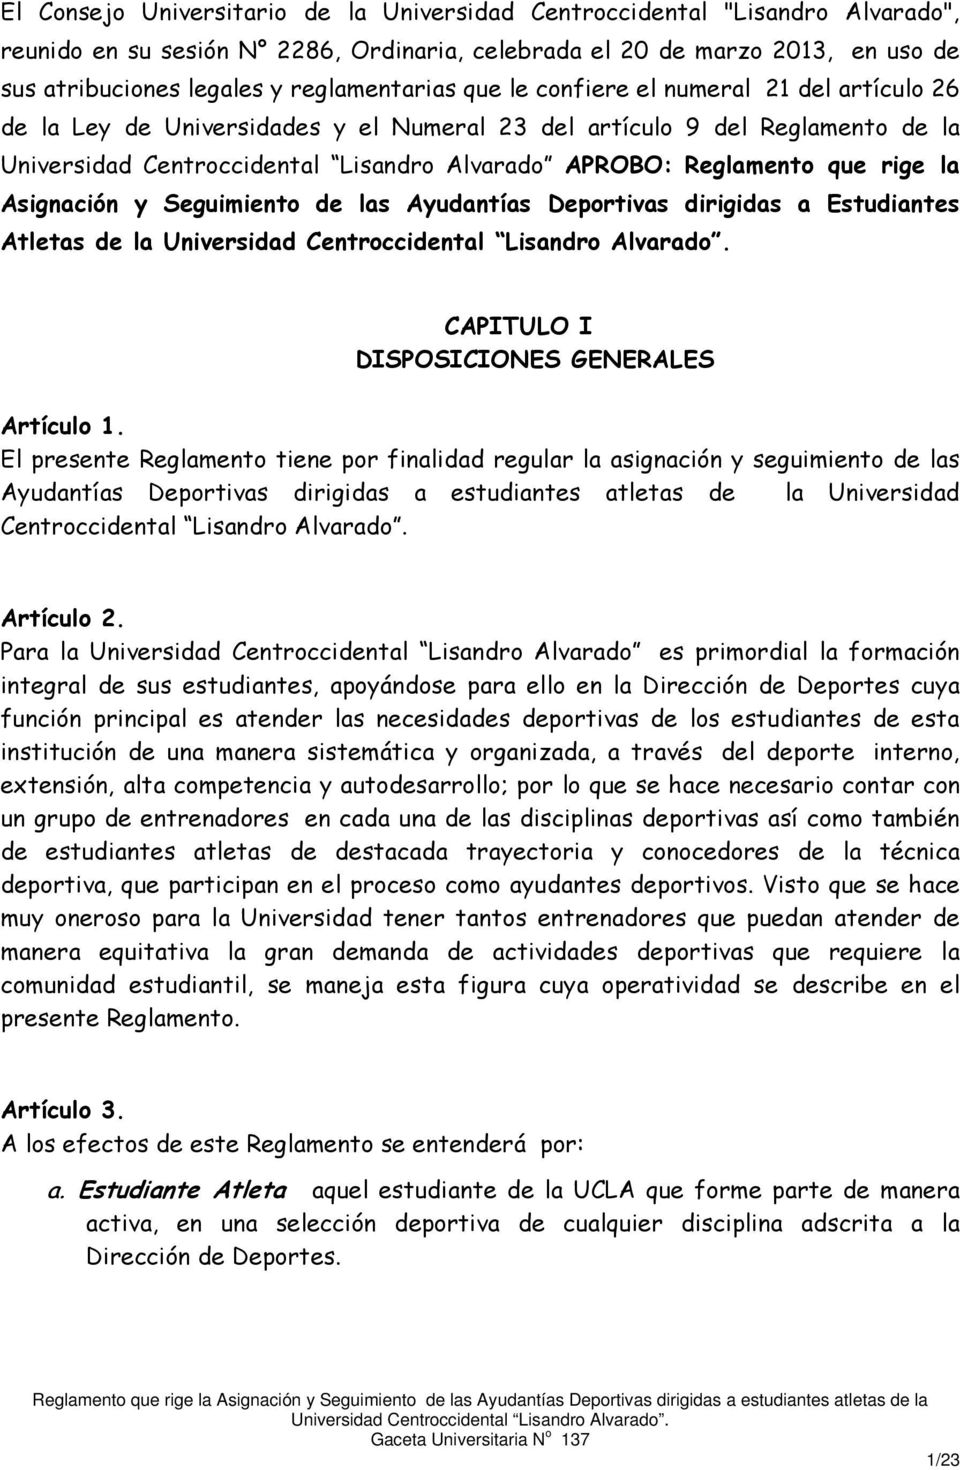 Reglamento que rige la Asignación y Seguimiento de las Ayudantías Deportivas dirigidas a Estudiantes Atletas de la CAPITULO I DISPOSICIONES GENERALES Artículo 1.